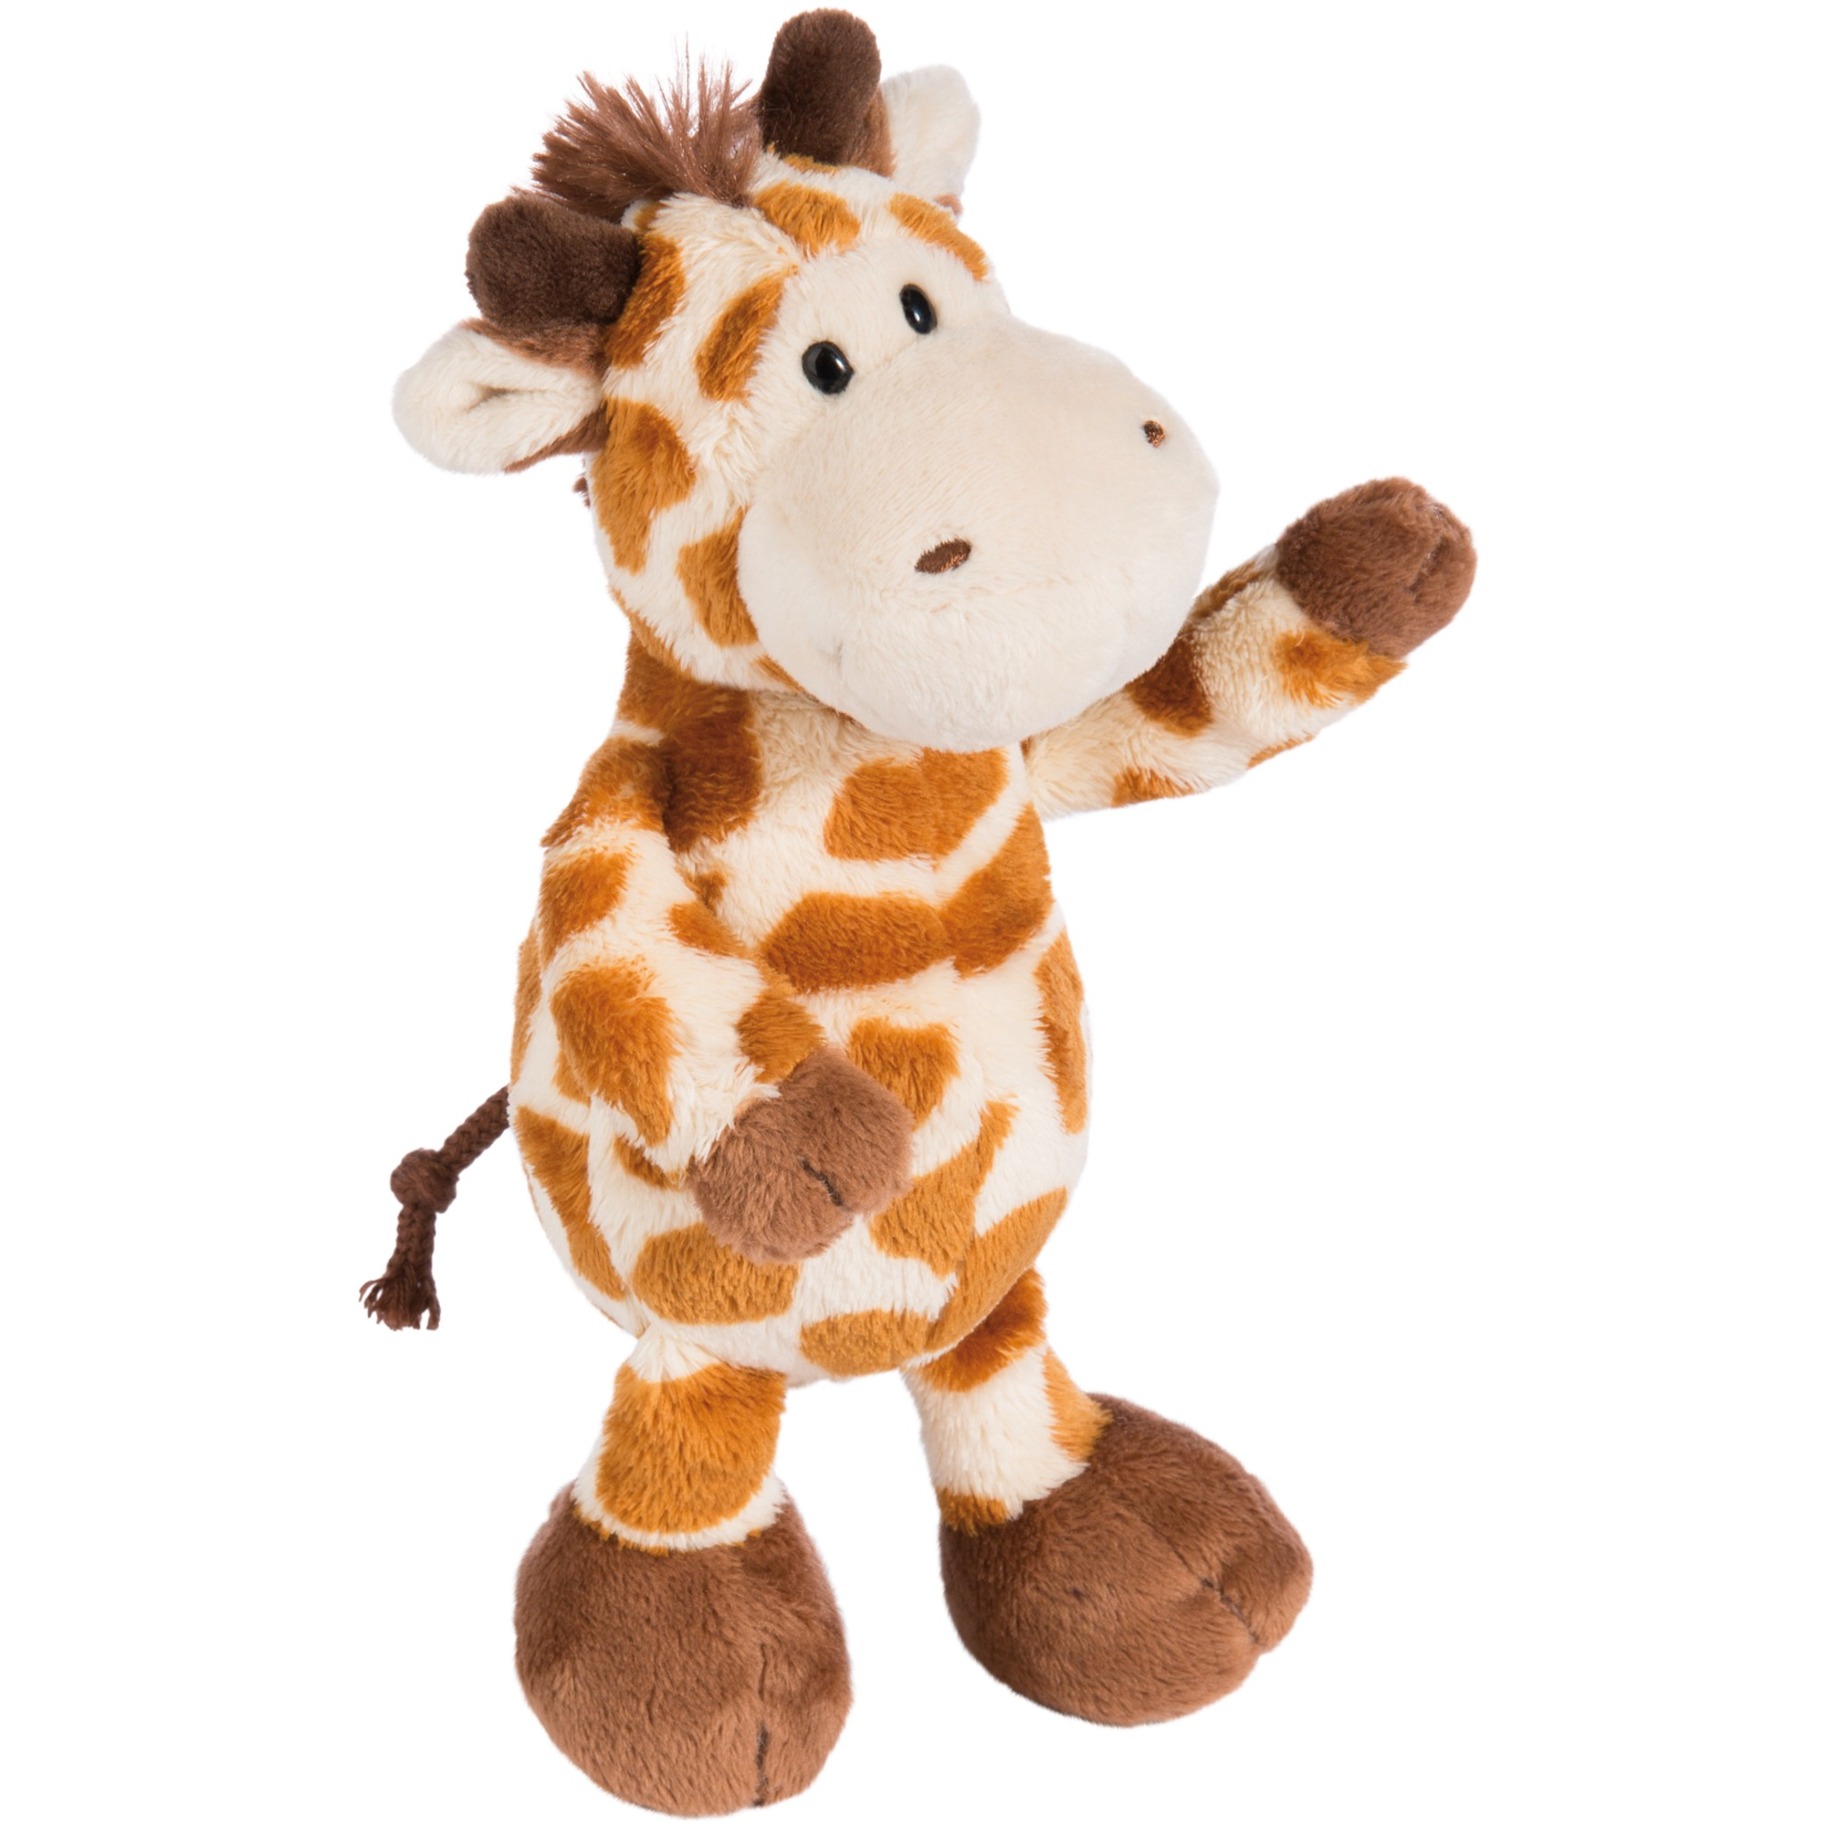 Image of Alternate - Zoo Friends Giraffe, Kuscheltier online einkaufen bei Alternate